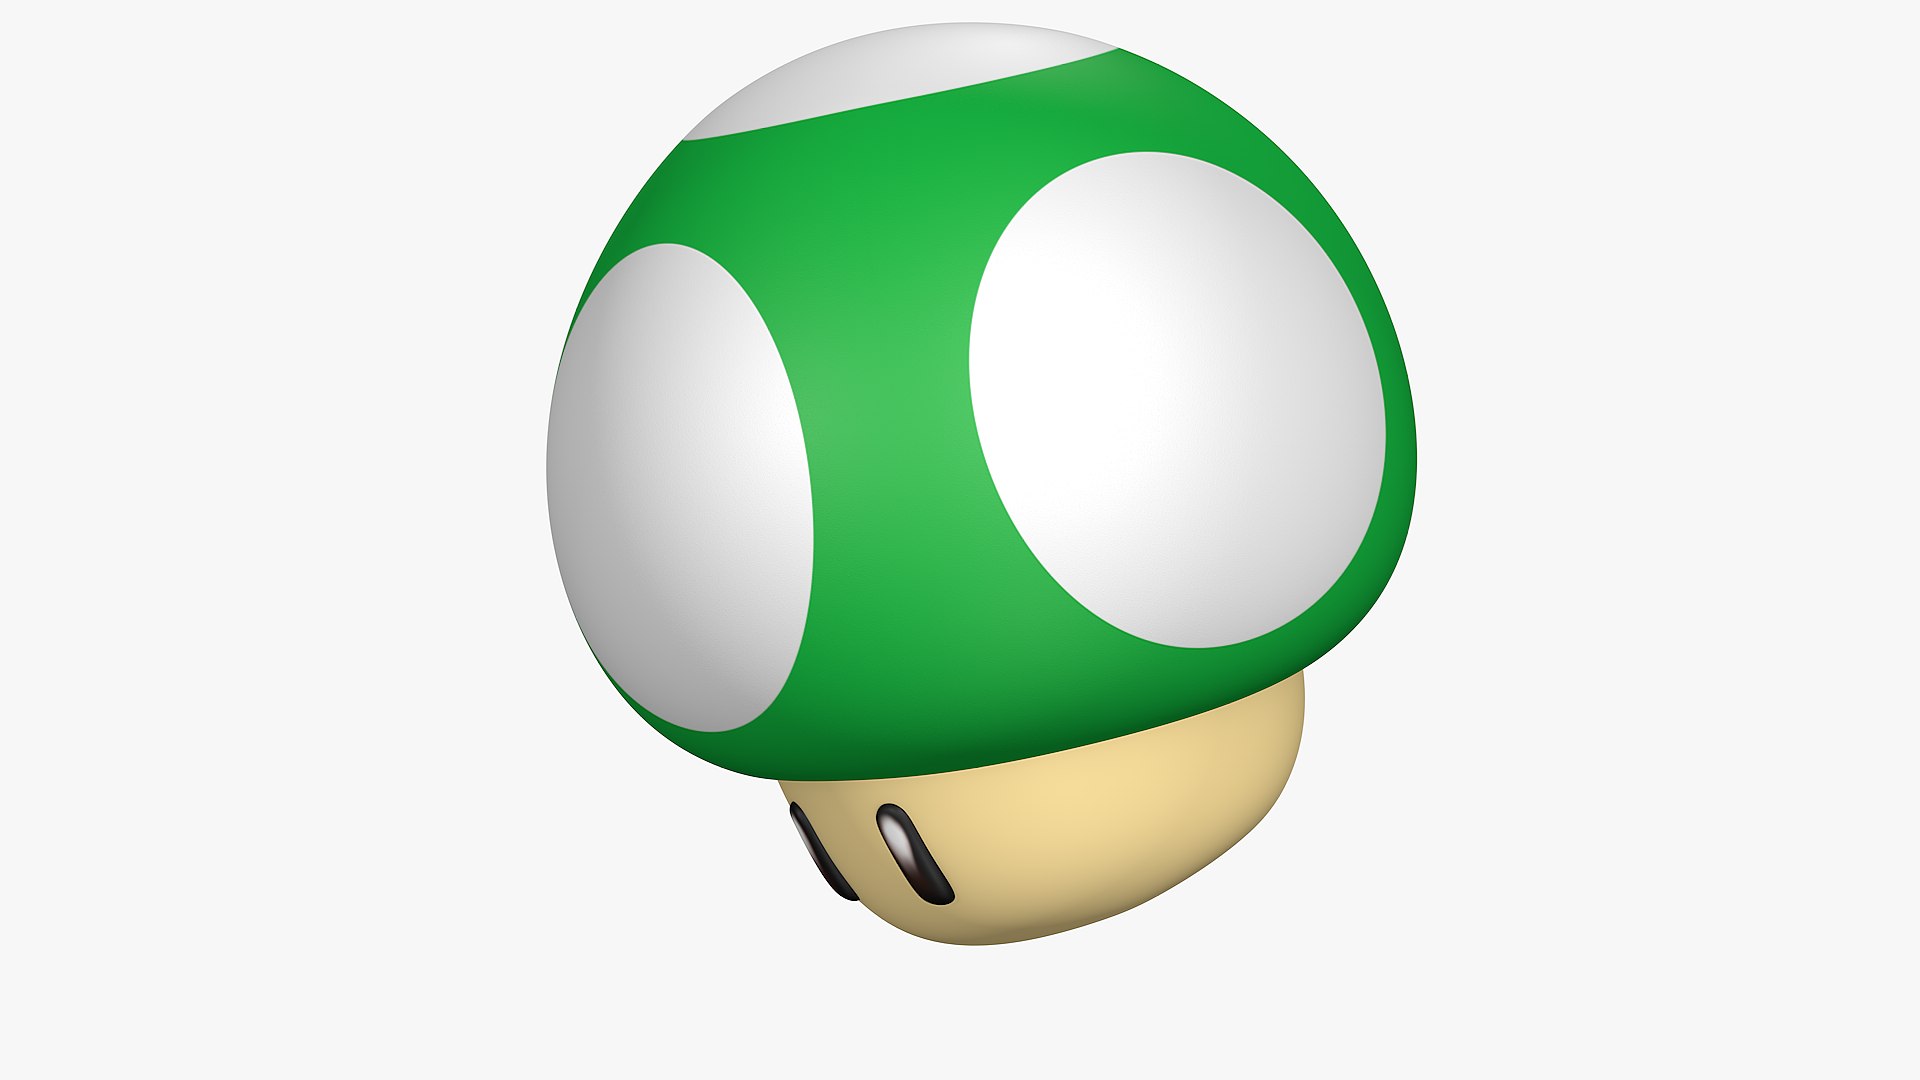 Mario bros Mushroom All Colors 3D model - TurboSquid 2060468